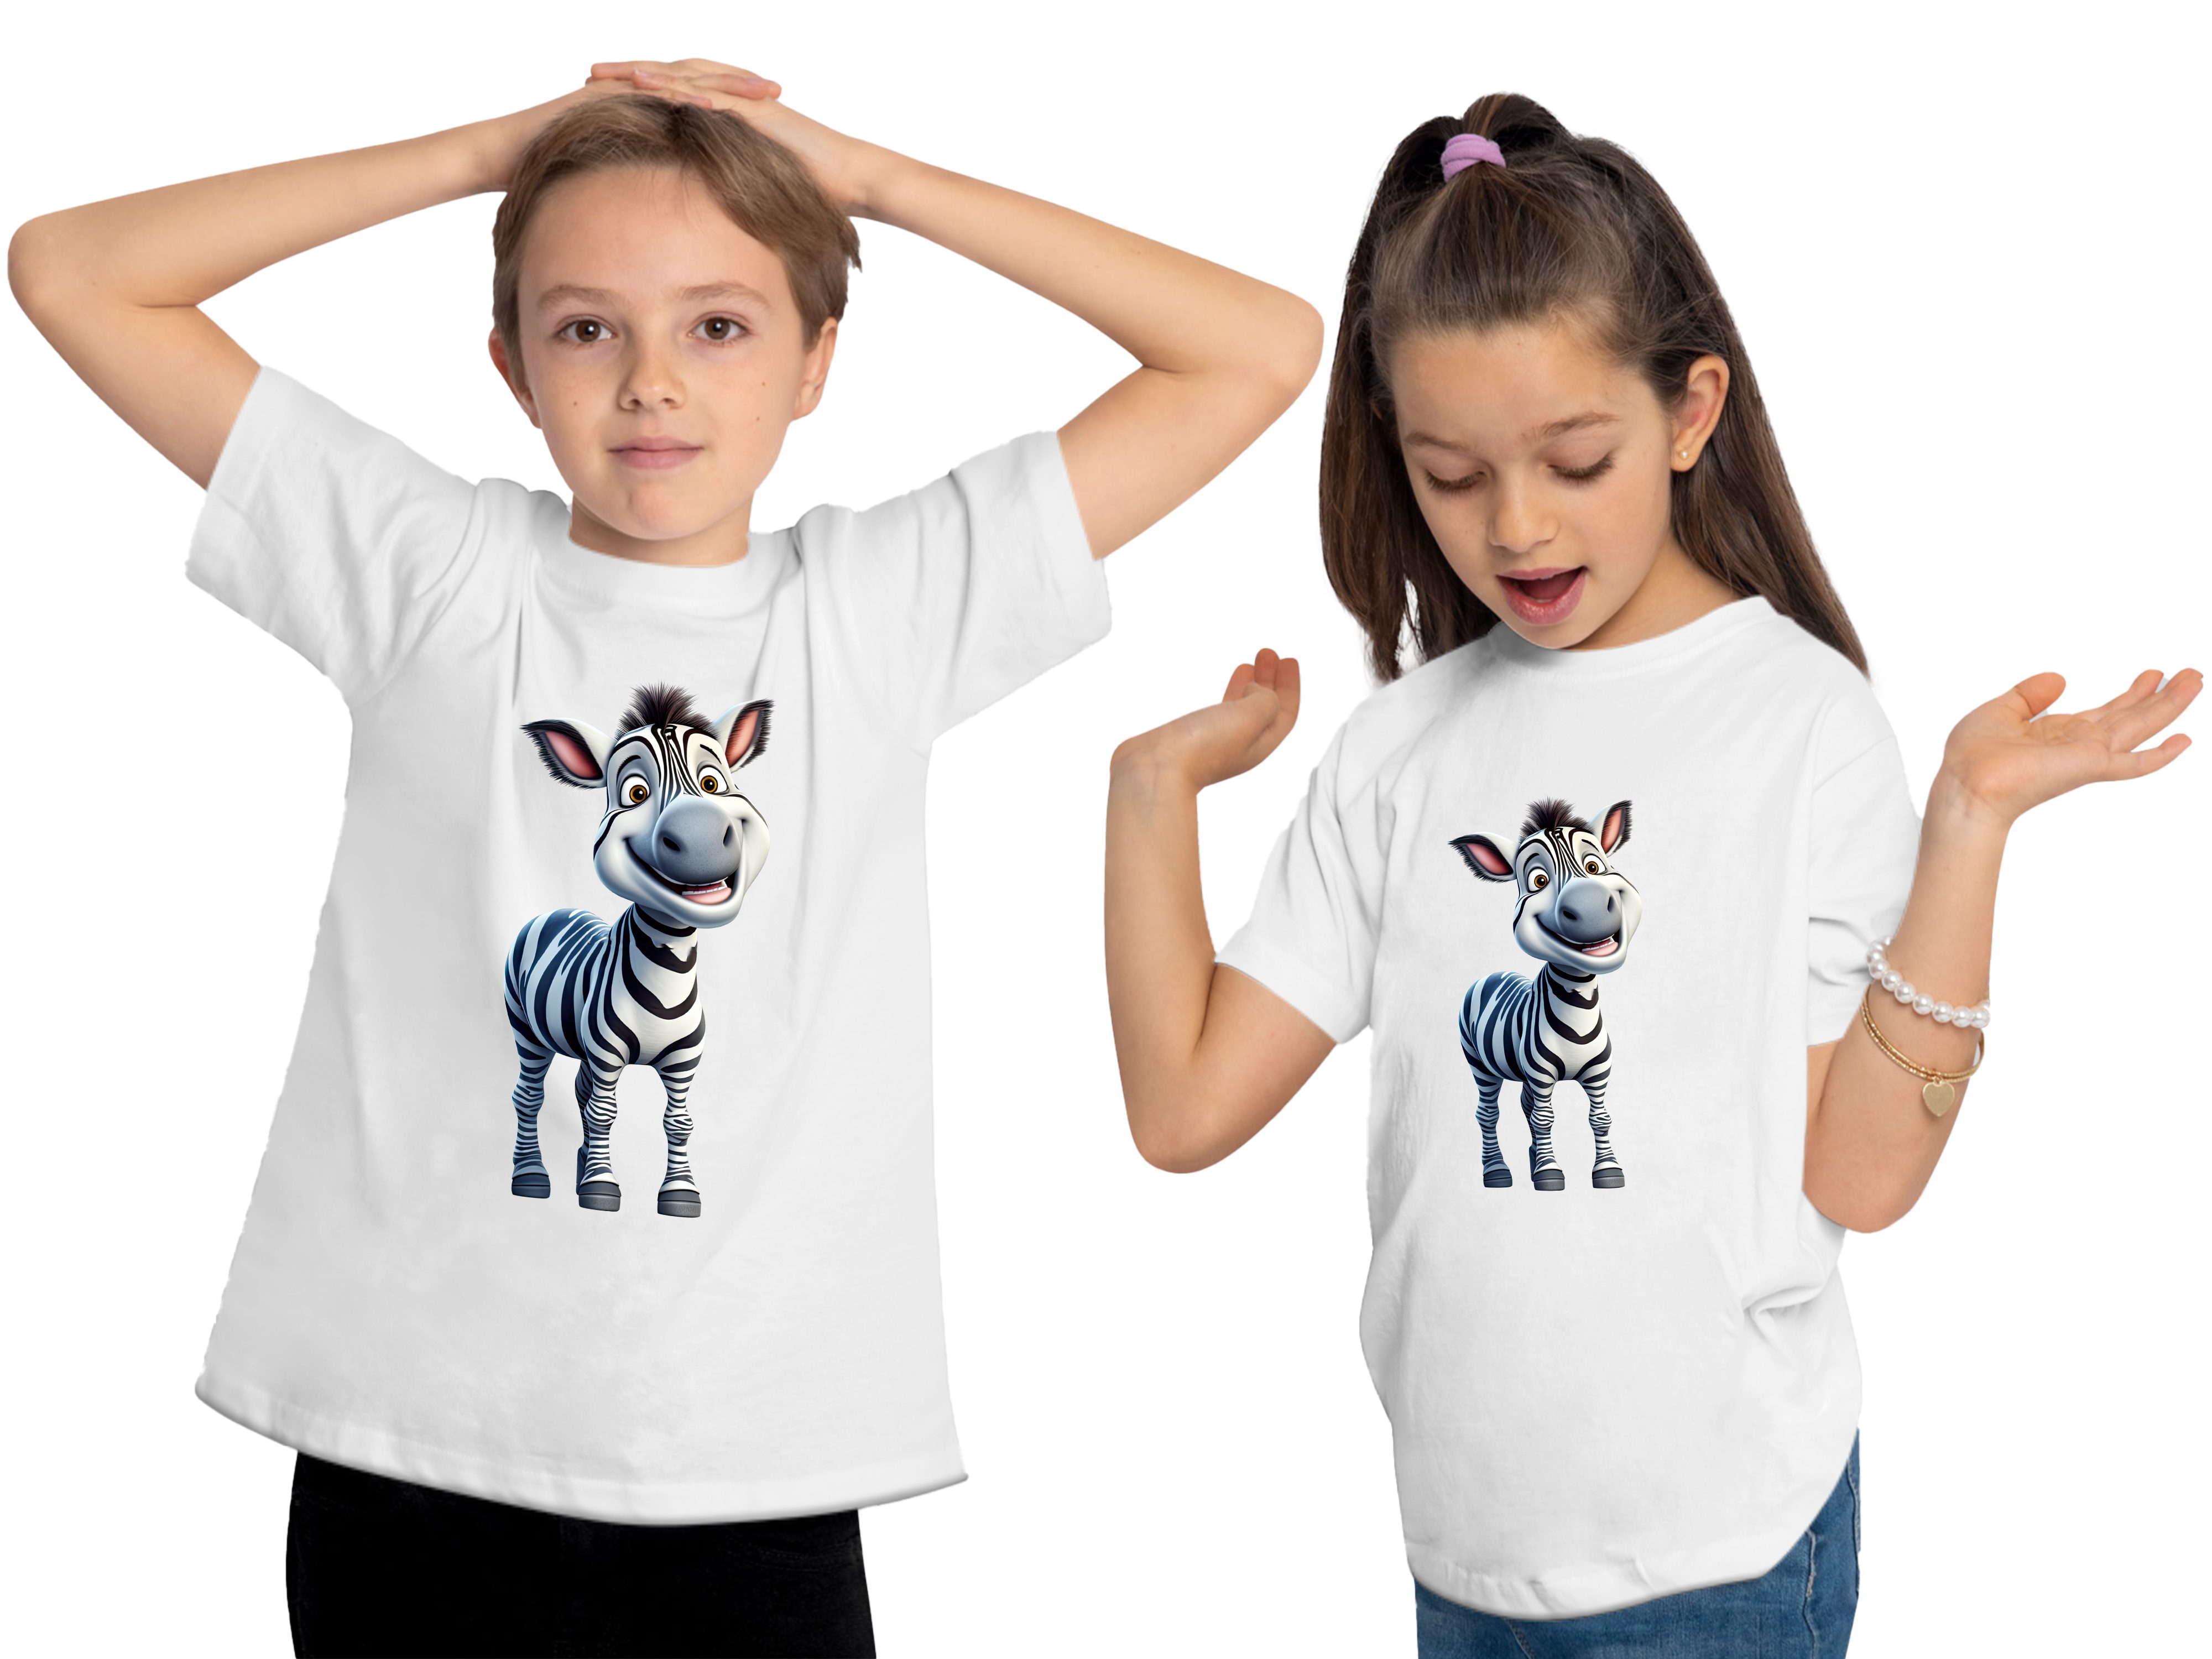 MyDesign24 T-Shirt Kinder Wildtier Print weiss - mit Baumwollshirt Baby Zebra Aufdruck, i280 bedruckt Shirt